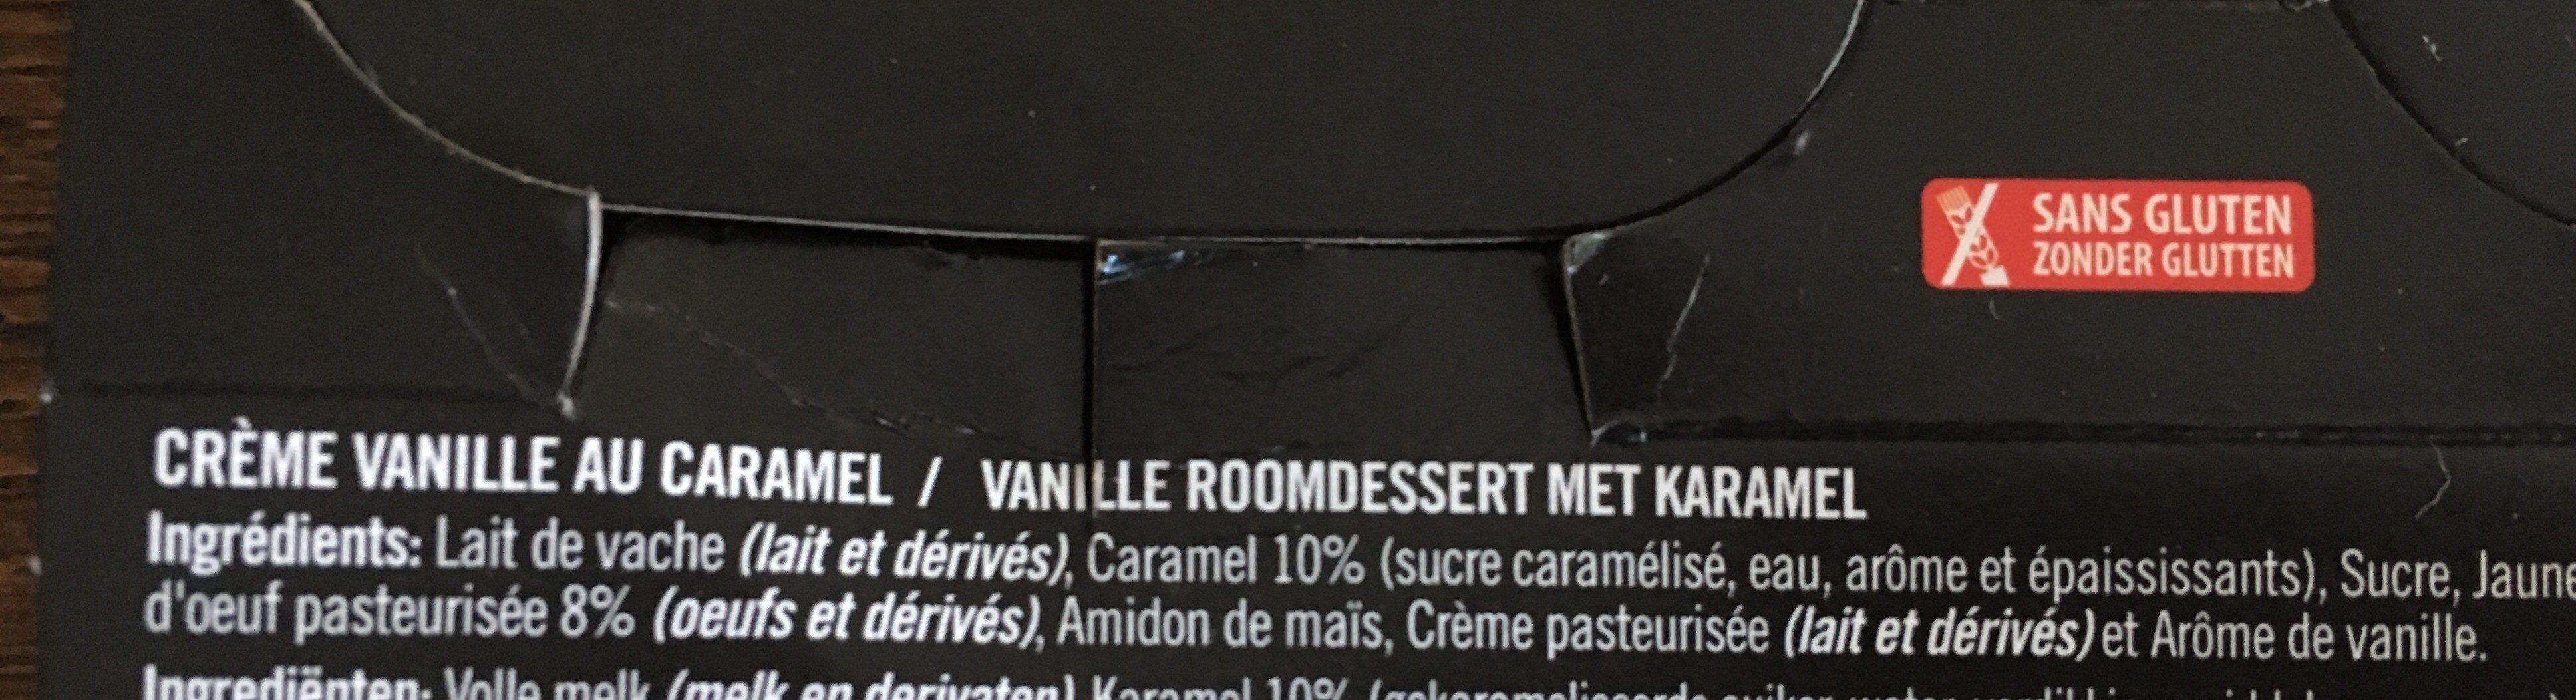 Creme vanille au caramel - Ingrediënten - fr